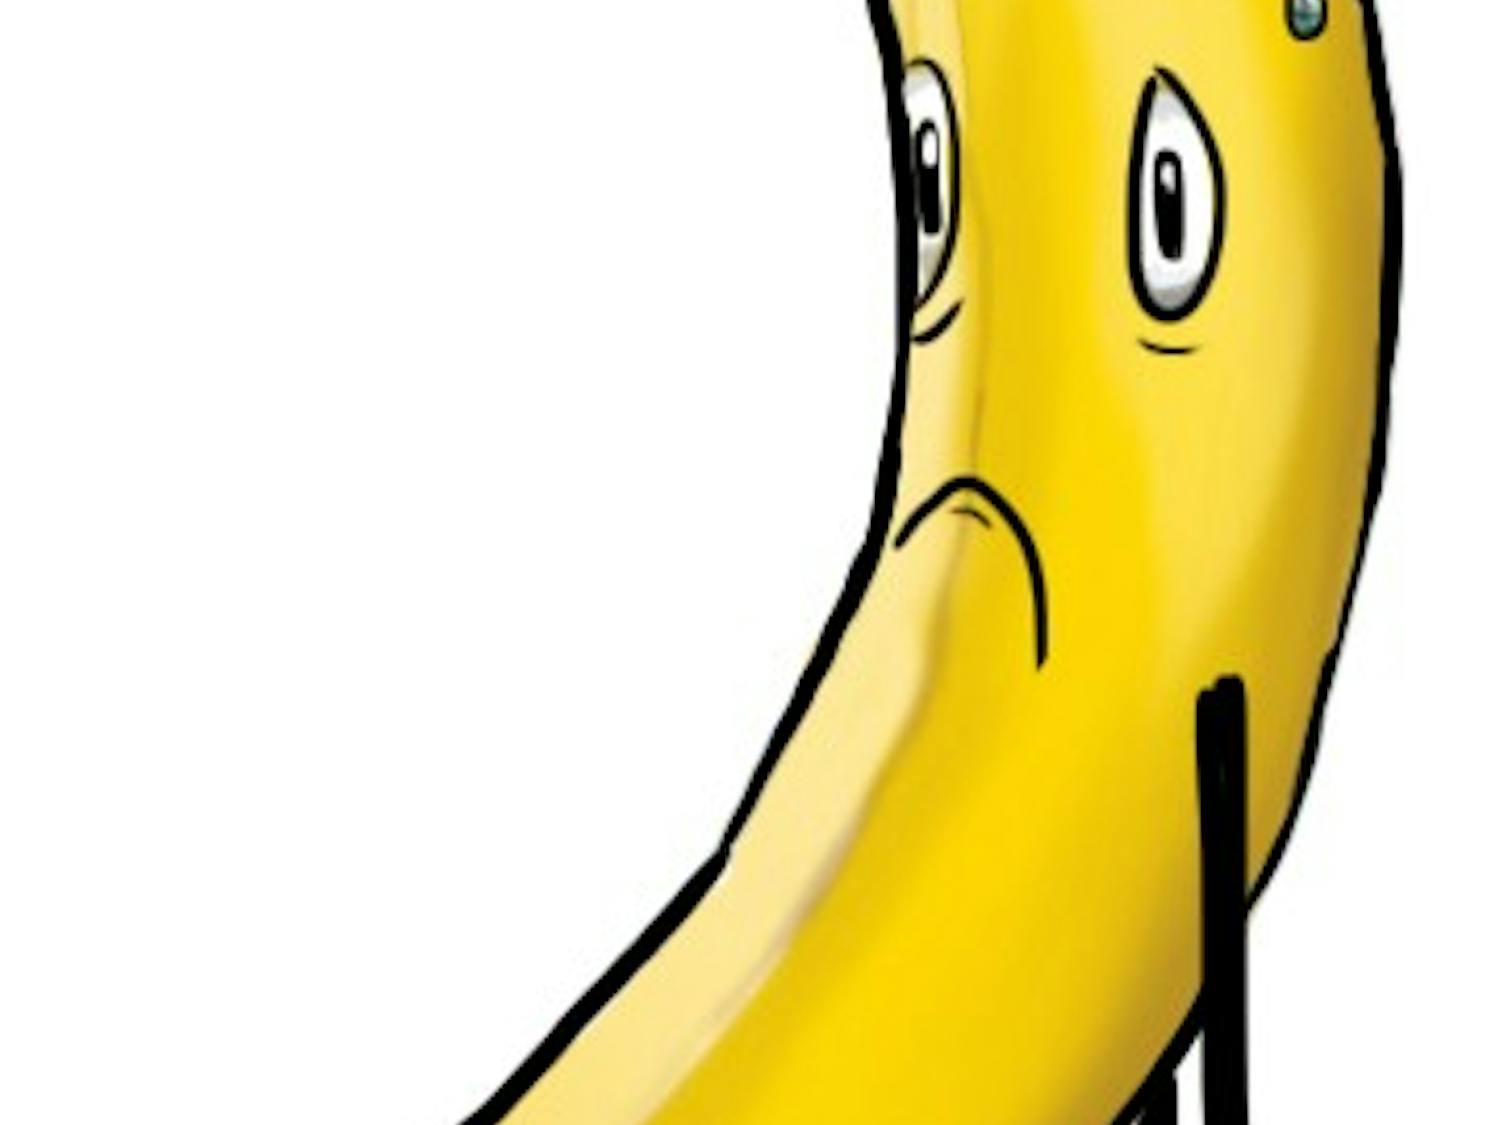 Sad banana